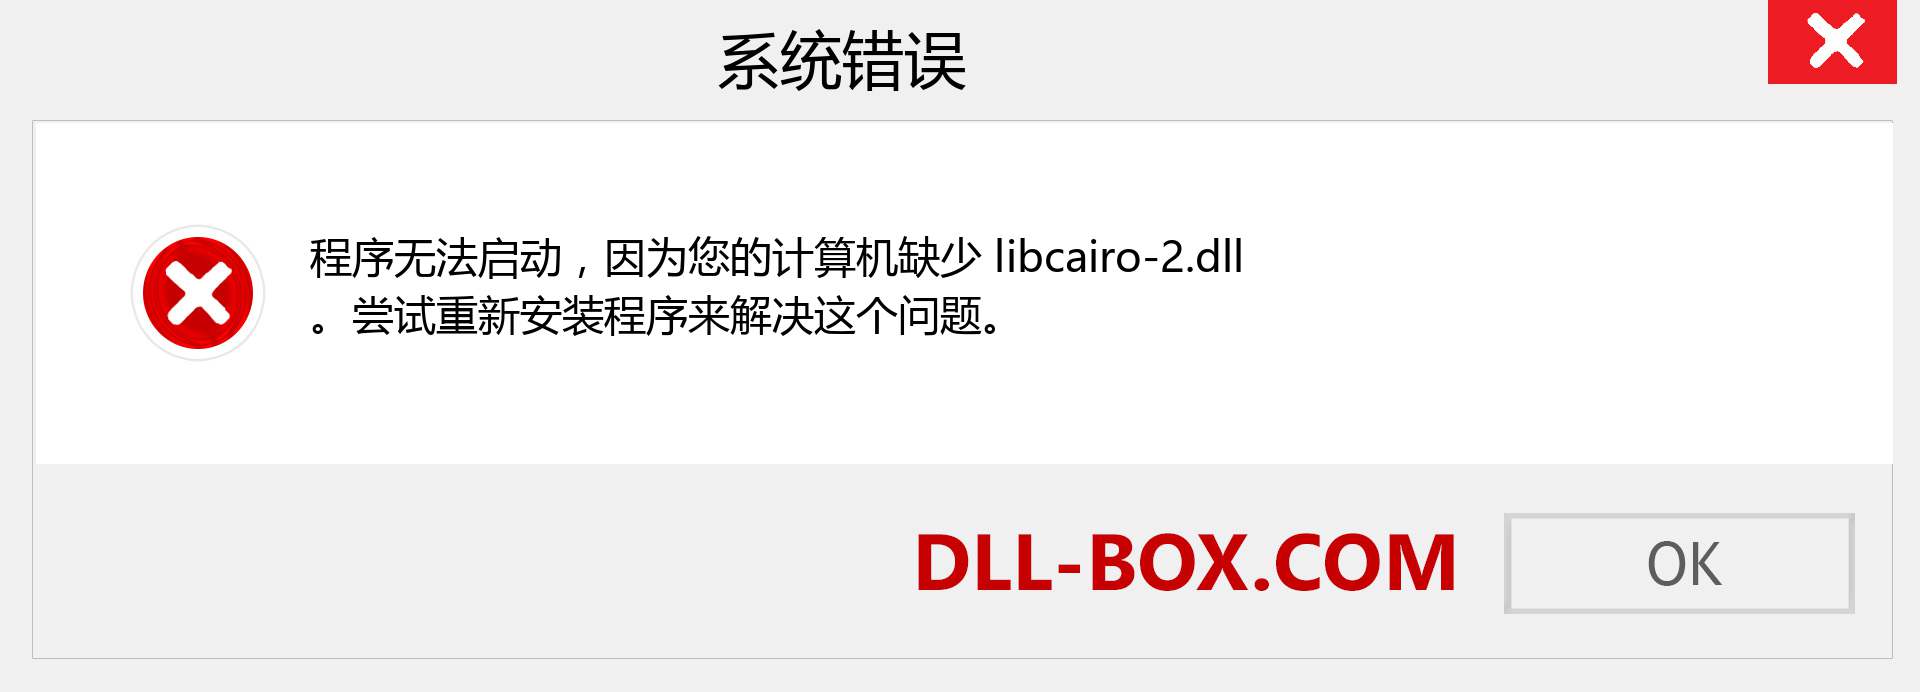 libcairo-2.dll 文件丢失？。 适用于 Windows 7、8、10 的下载 - 修复 Windows、照片、图像上的 libcairo-2 dll 丢失错误